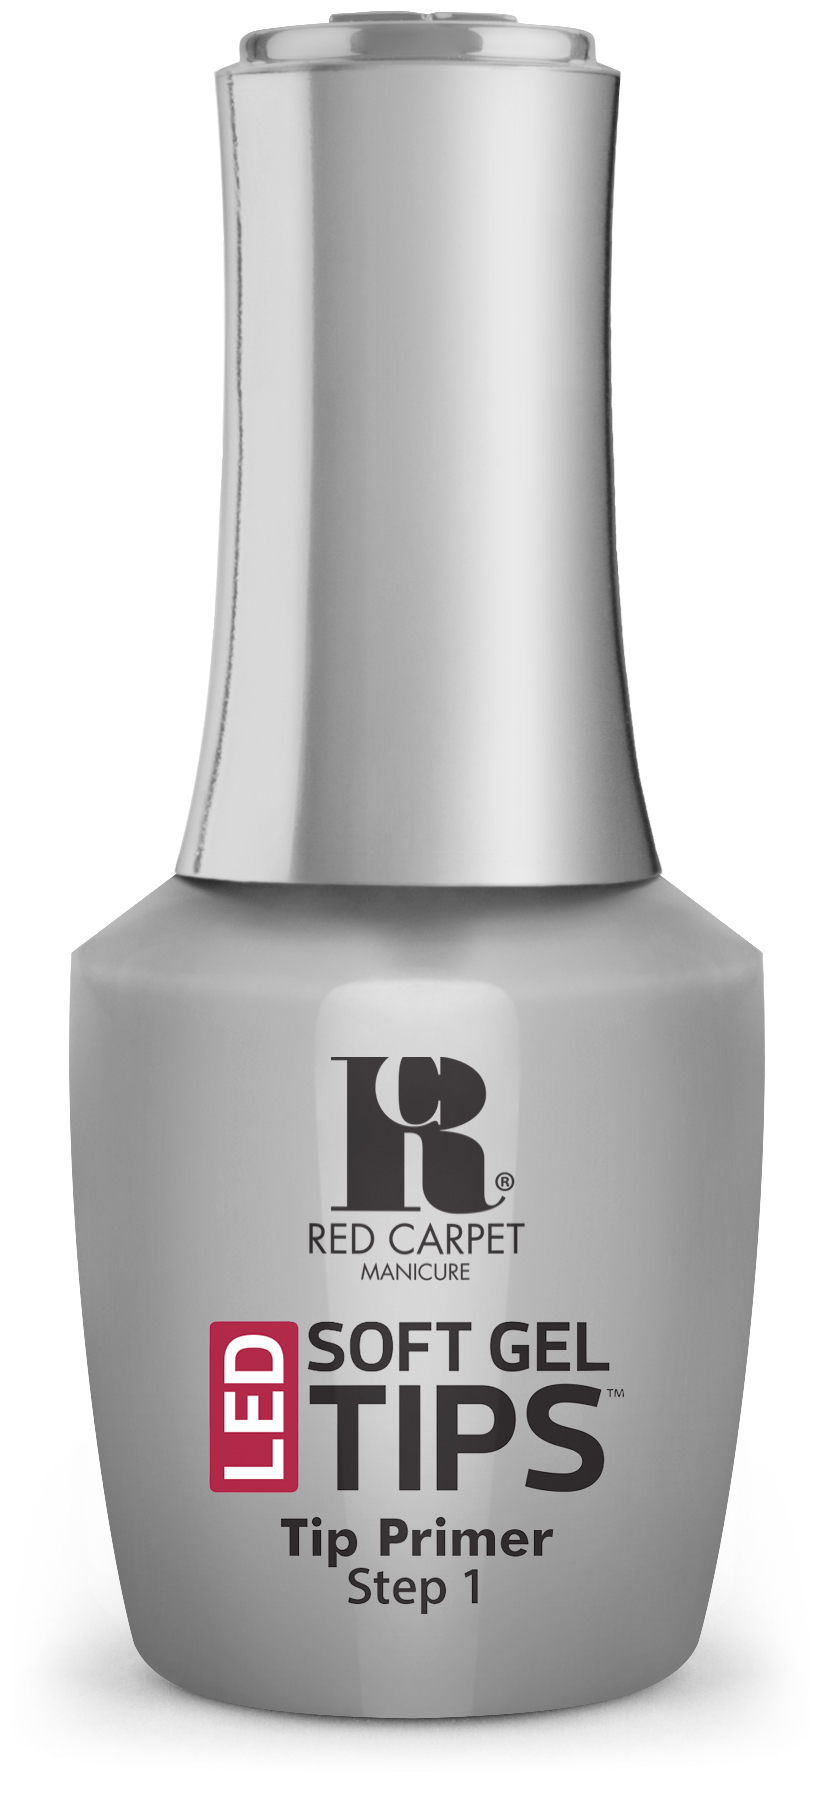 LED Soft Gel Tip Adhesive Gel Coat - Red Carpet Manicure